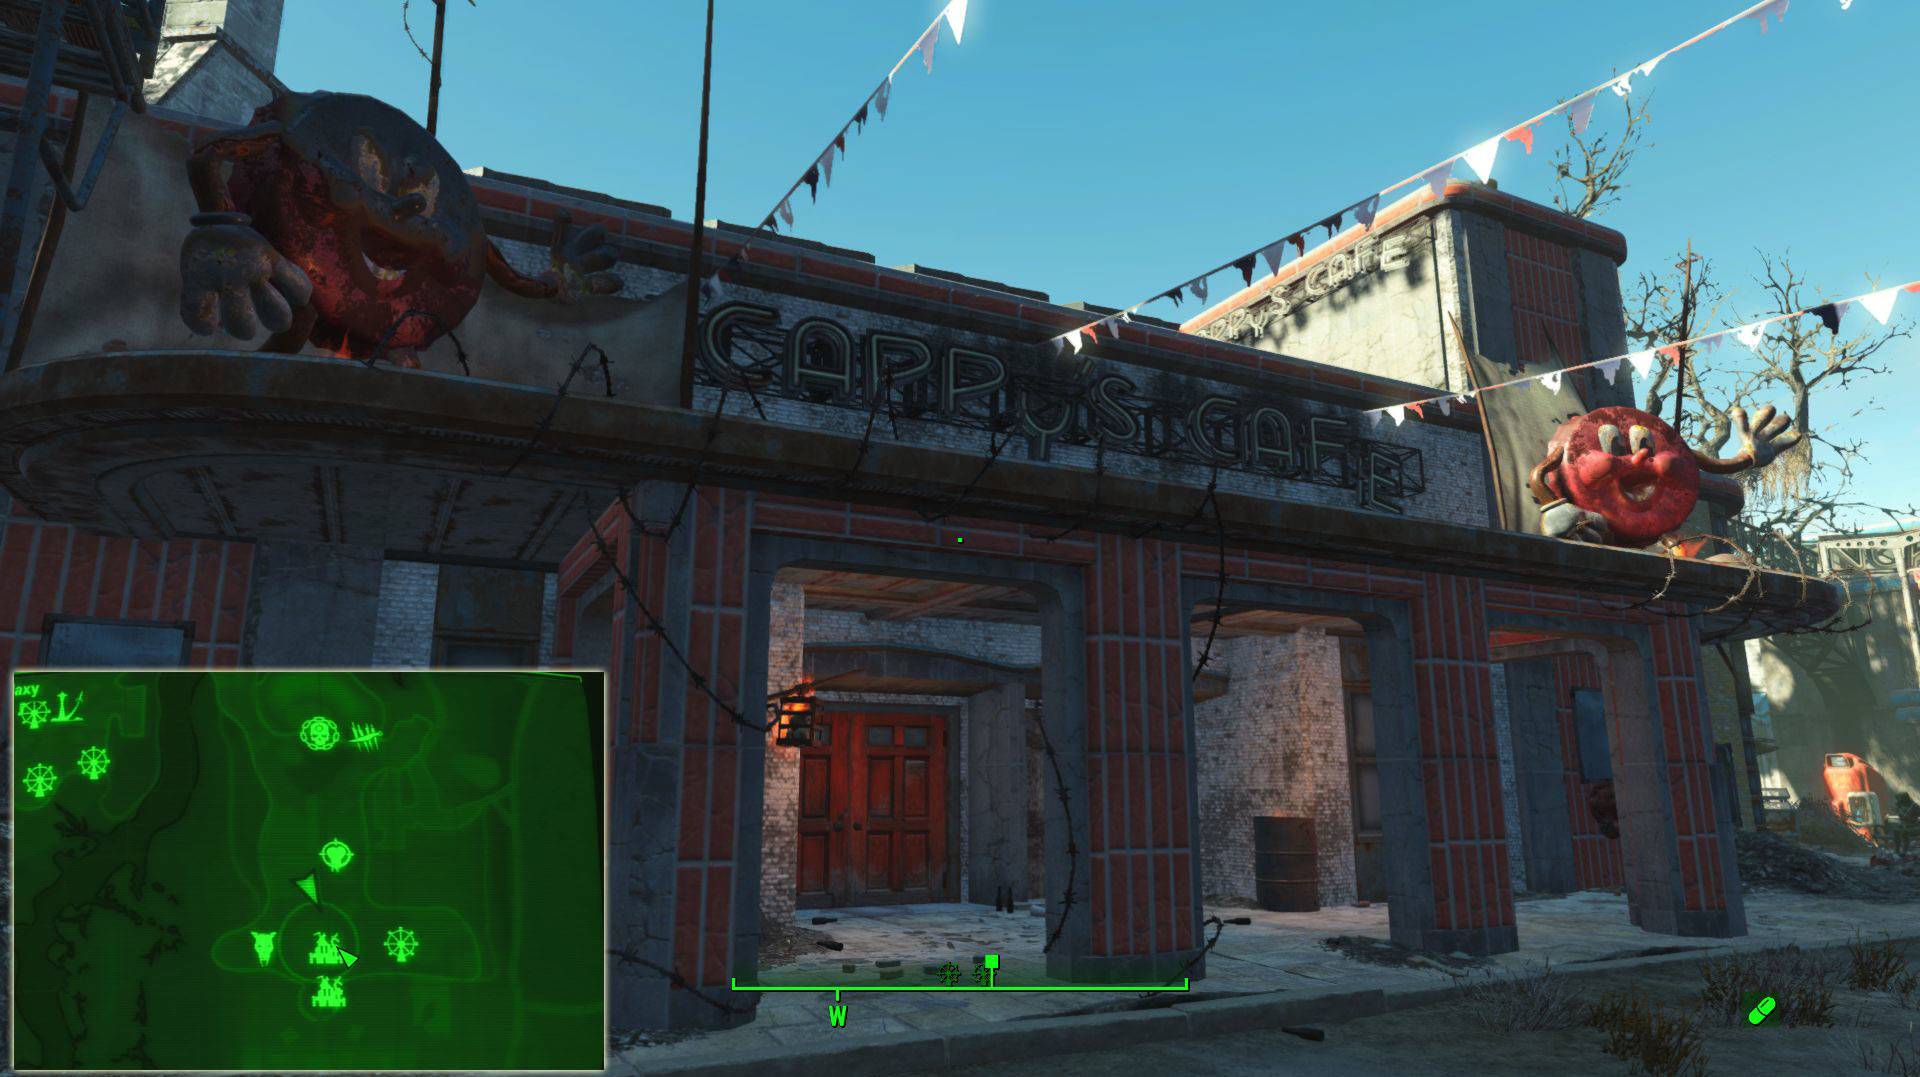 Fallout 4 nuka world завод по розливу напитков фото 69